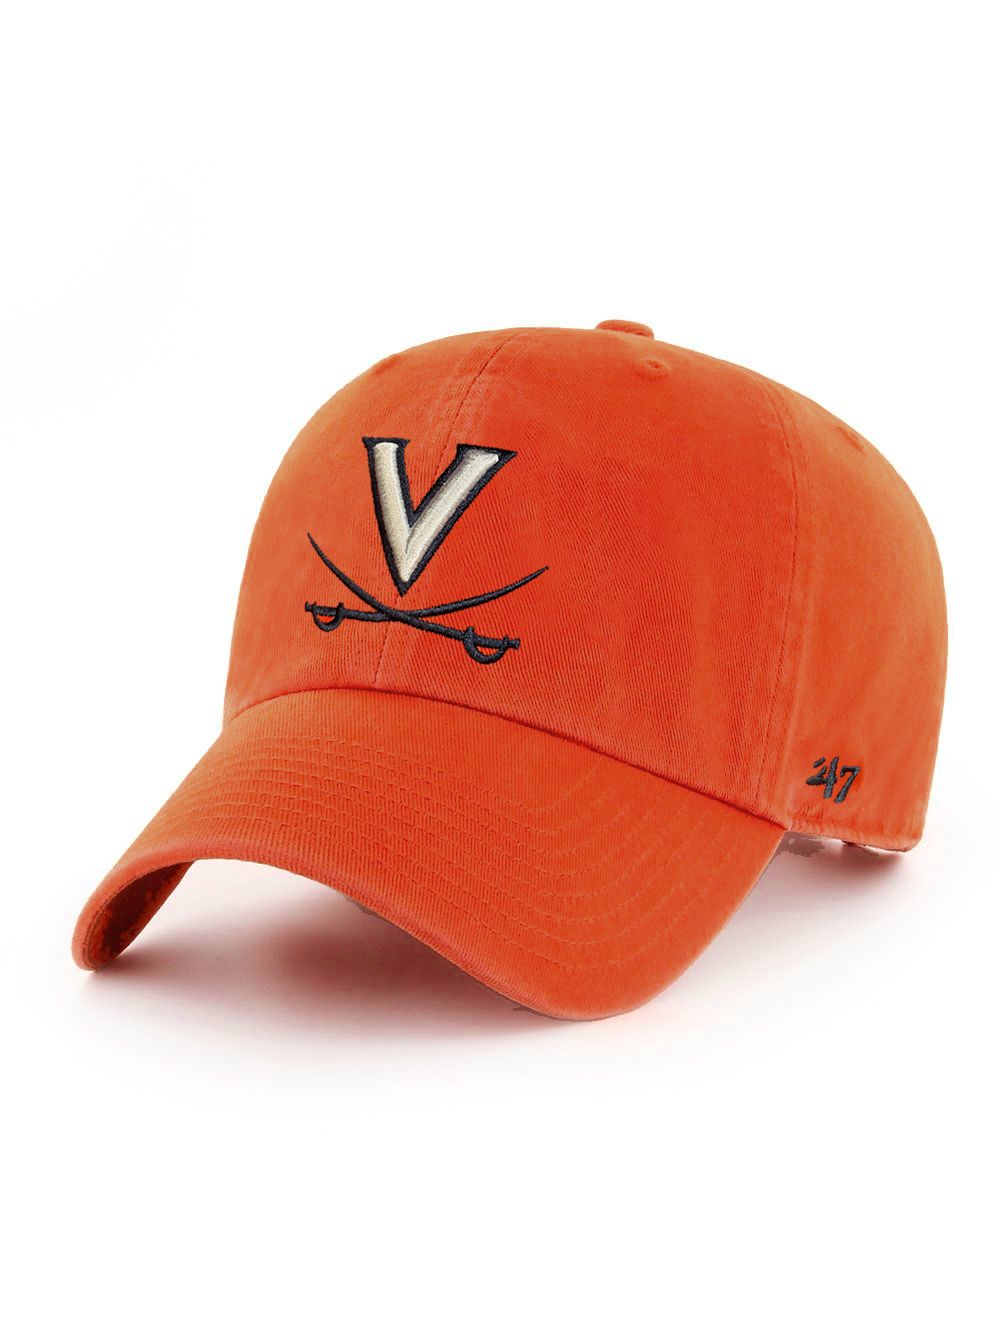 Orange Hat - 47 and V Crossed Adjustable of Mincer\'s Sabers Brand Charlottesville